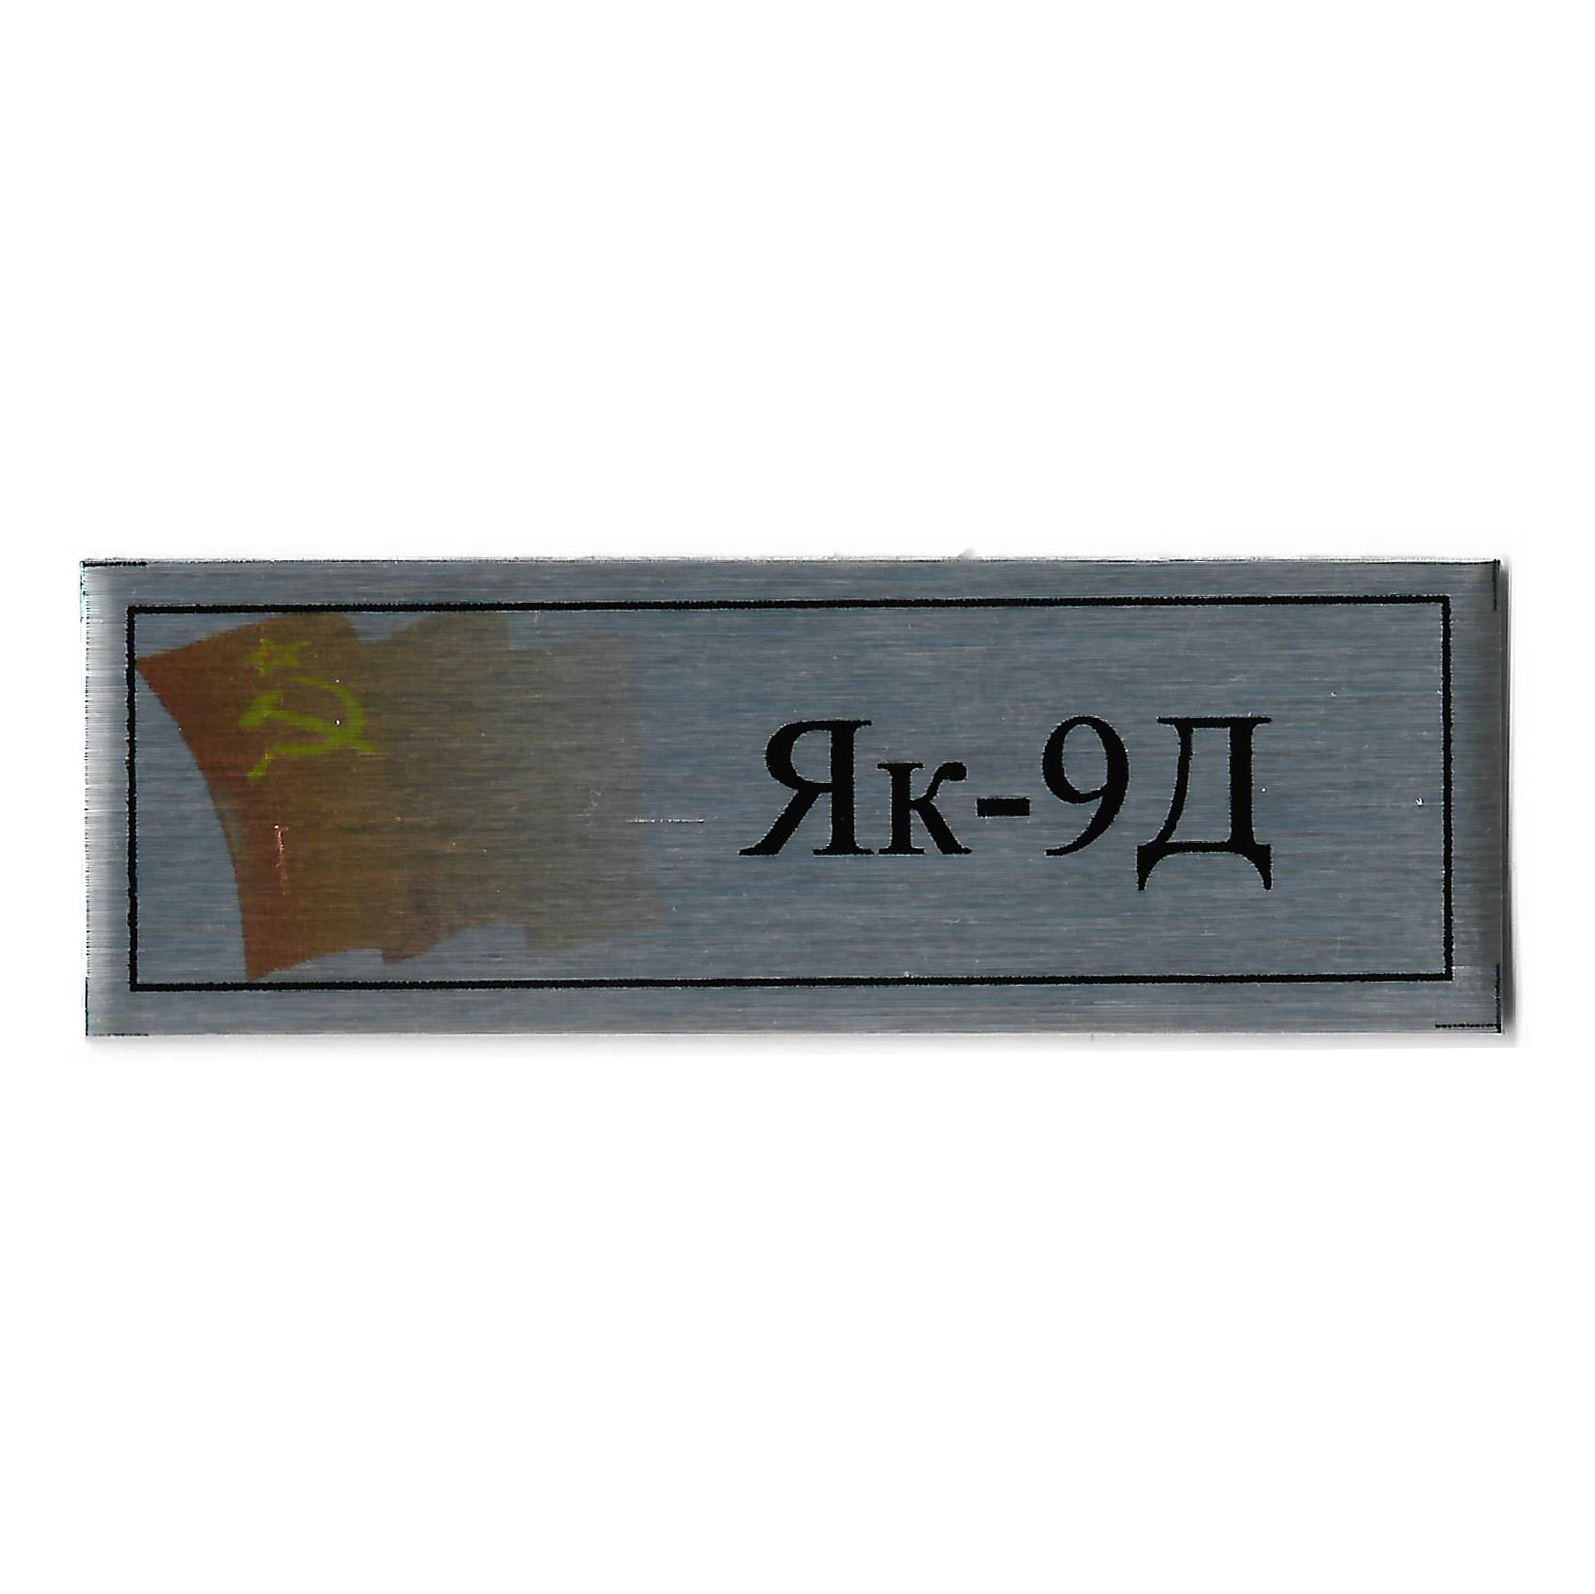 Т361 Plate Табличка для Як-9Д, 60х20 мм, серебро